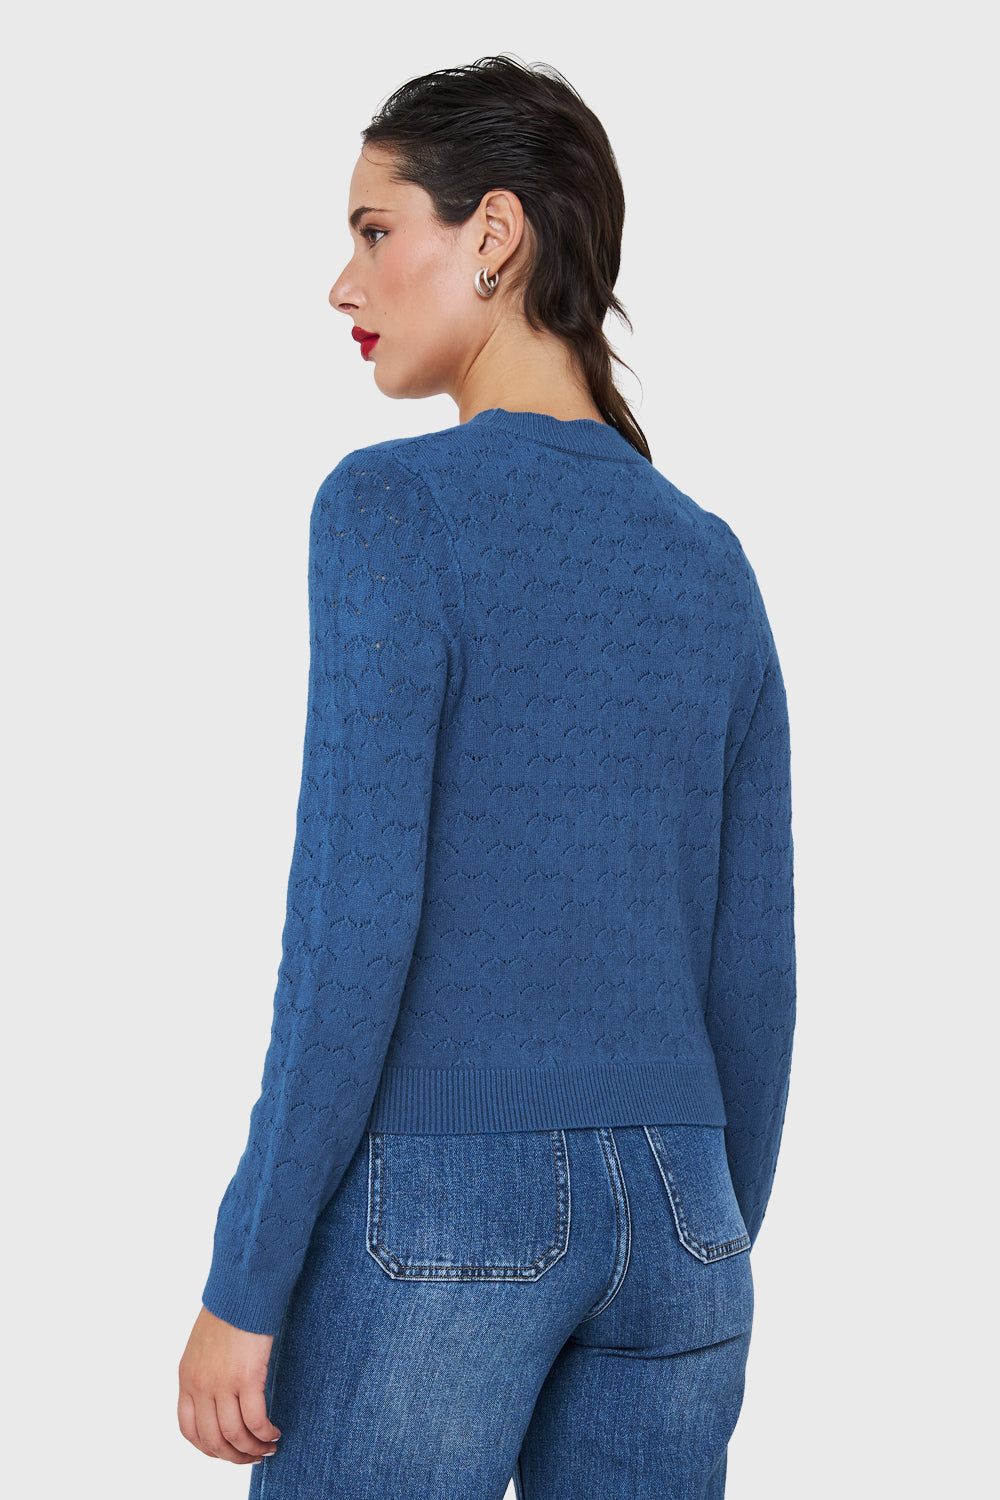 Sweater De Punto Fantasía Azul Índigo